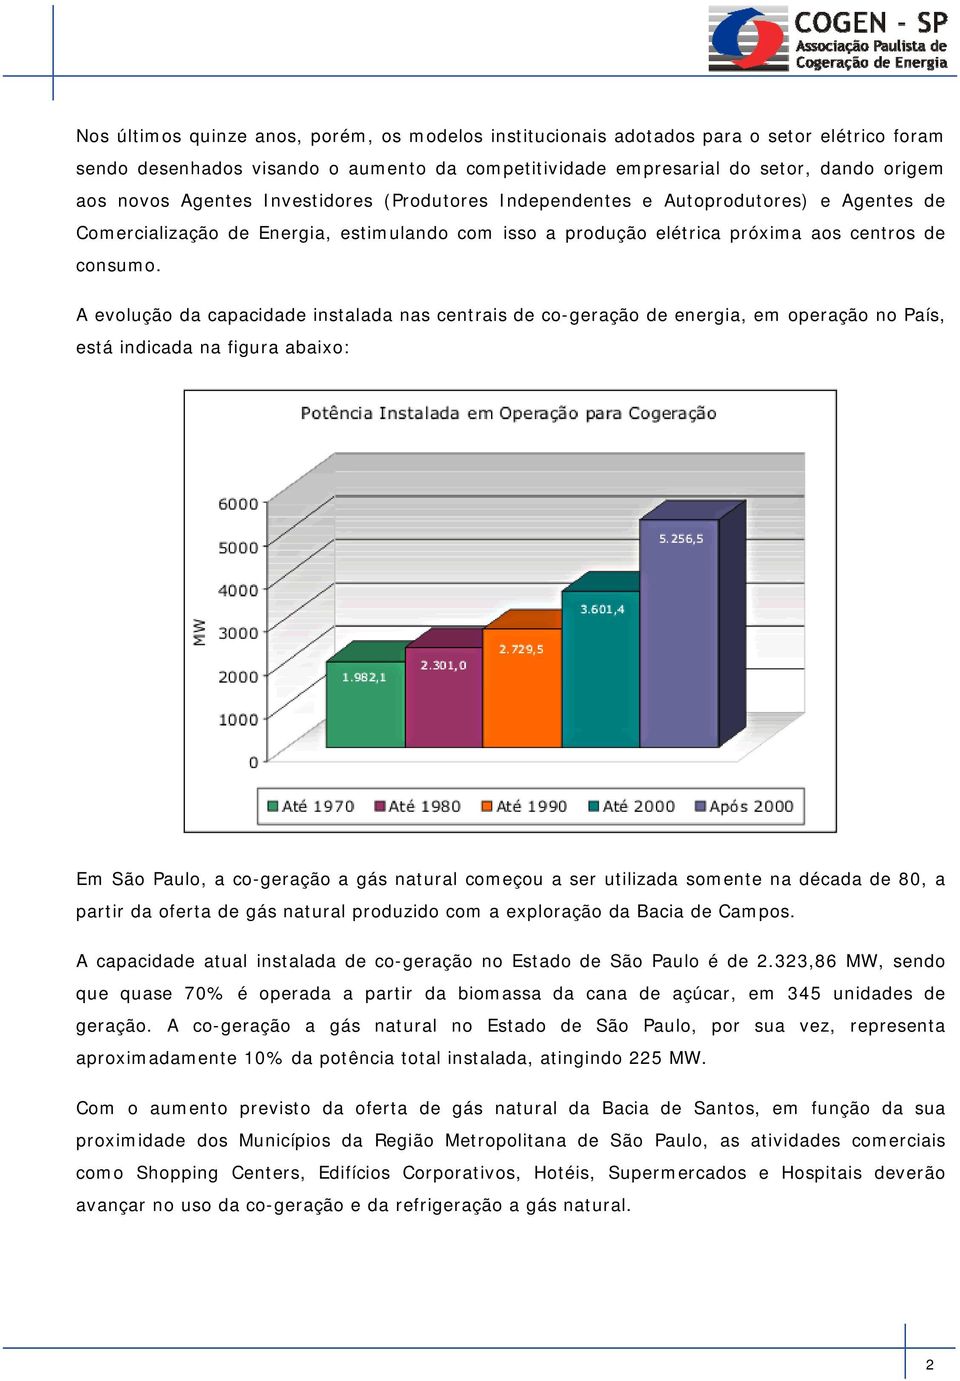 A evolução da capacidade instalada nas centrais de co-geração de energia, em operação no País, está indicada na figura abaixo: Em São Paulo, a co-geração a gás natural começou a ser utilizada somente